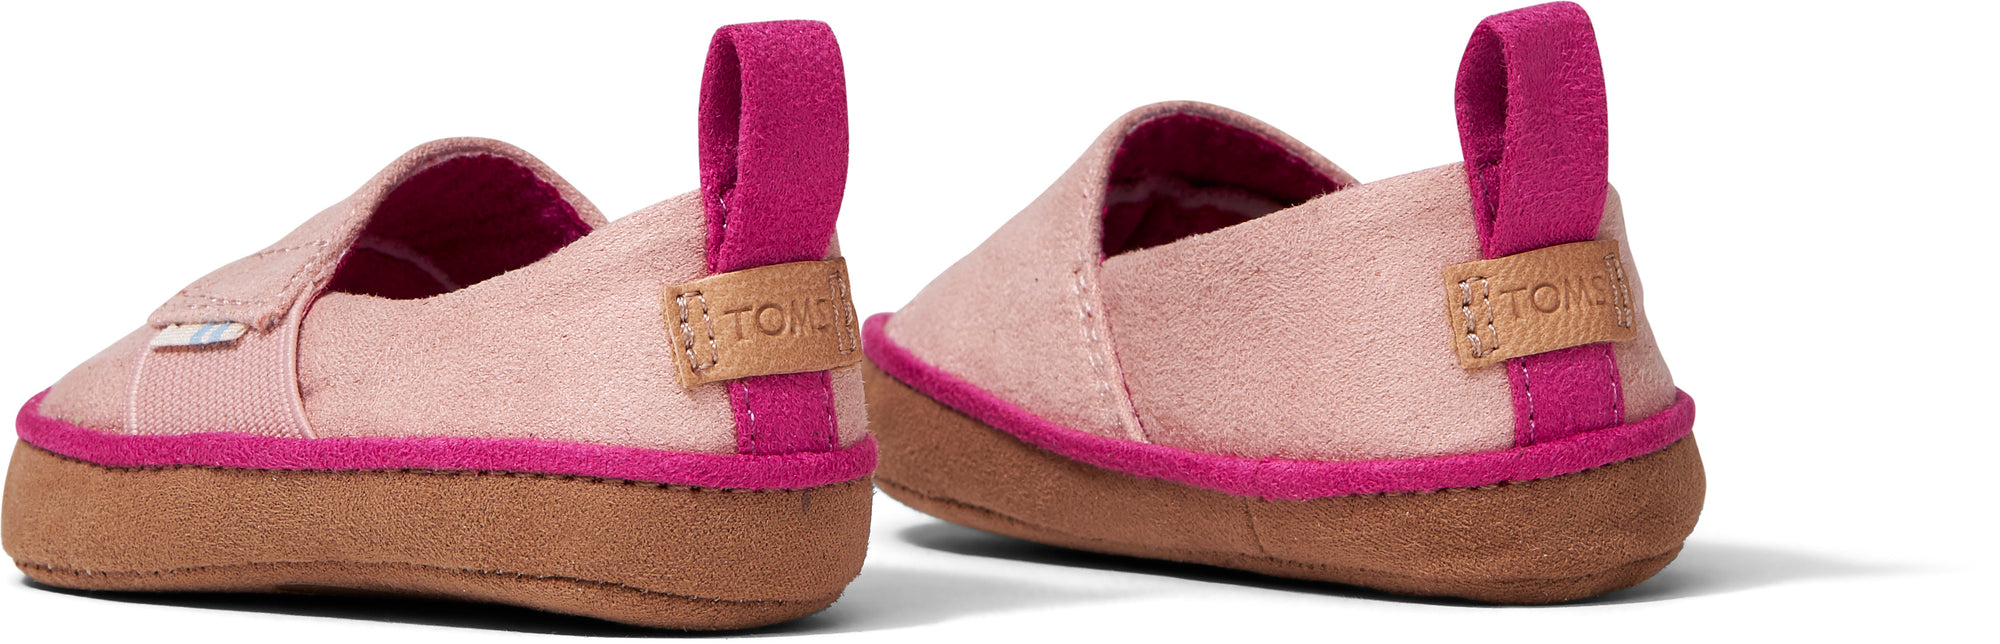 Dětské růžové botičky TOMS Pinto